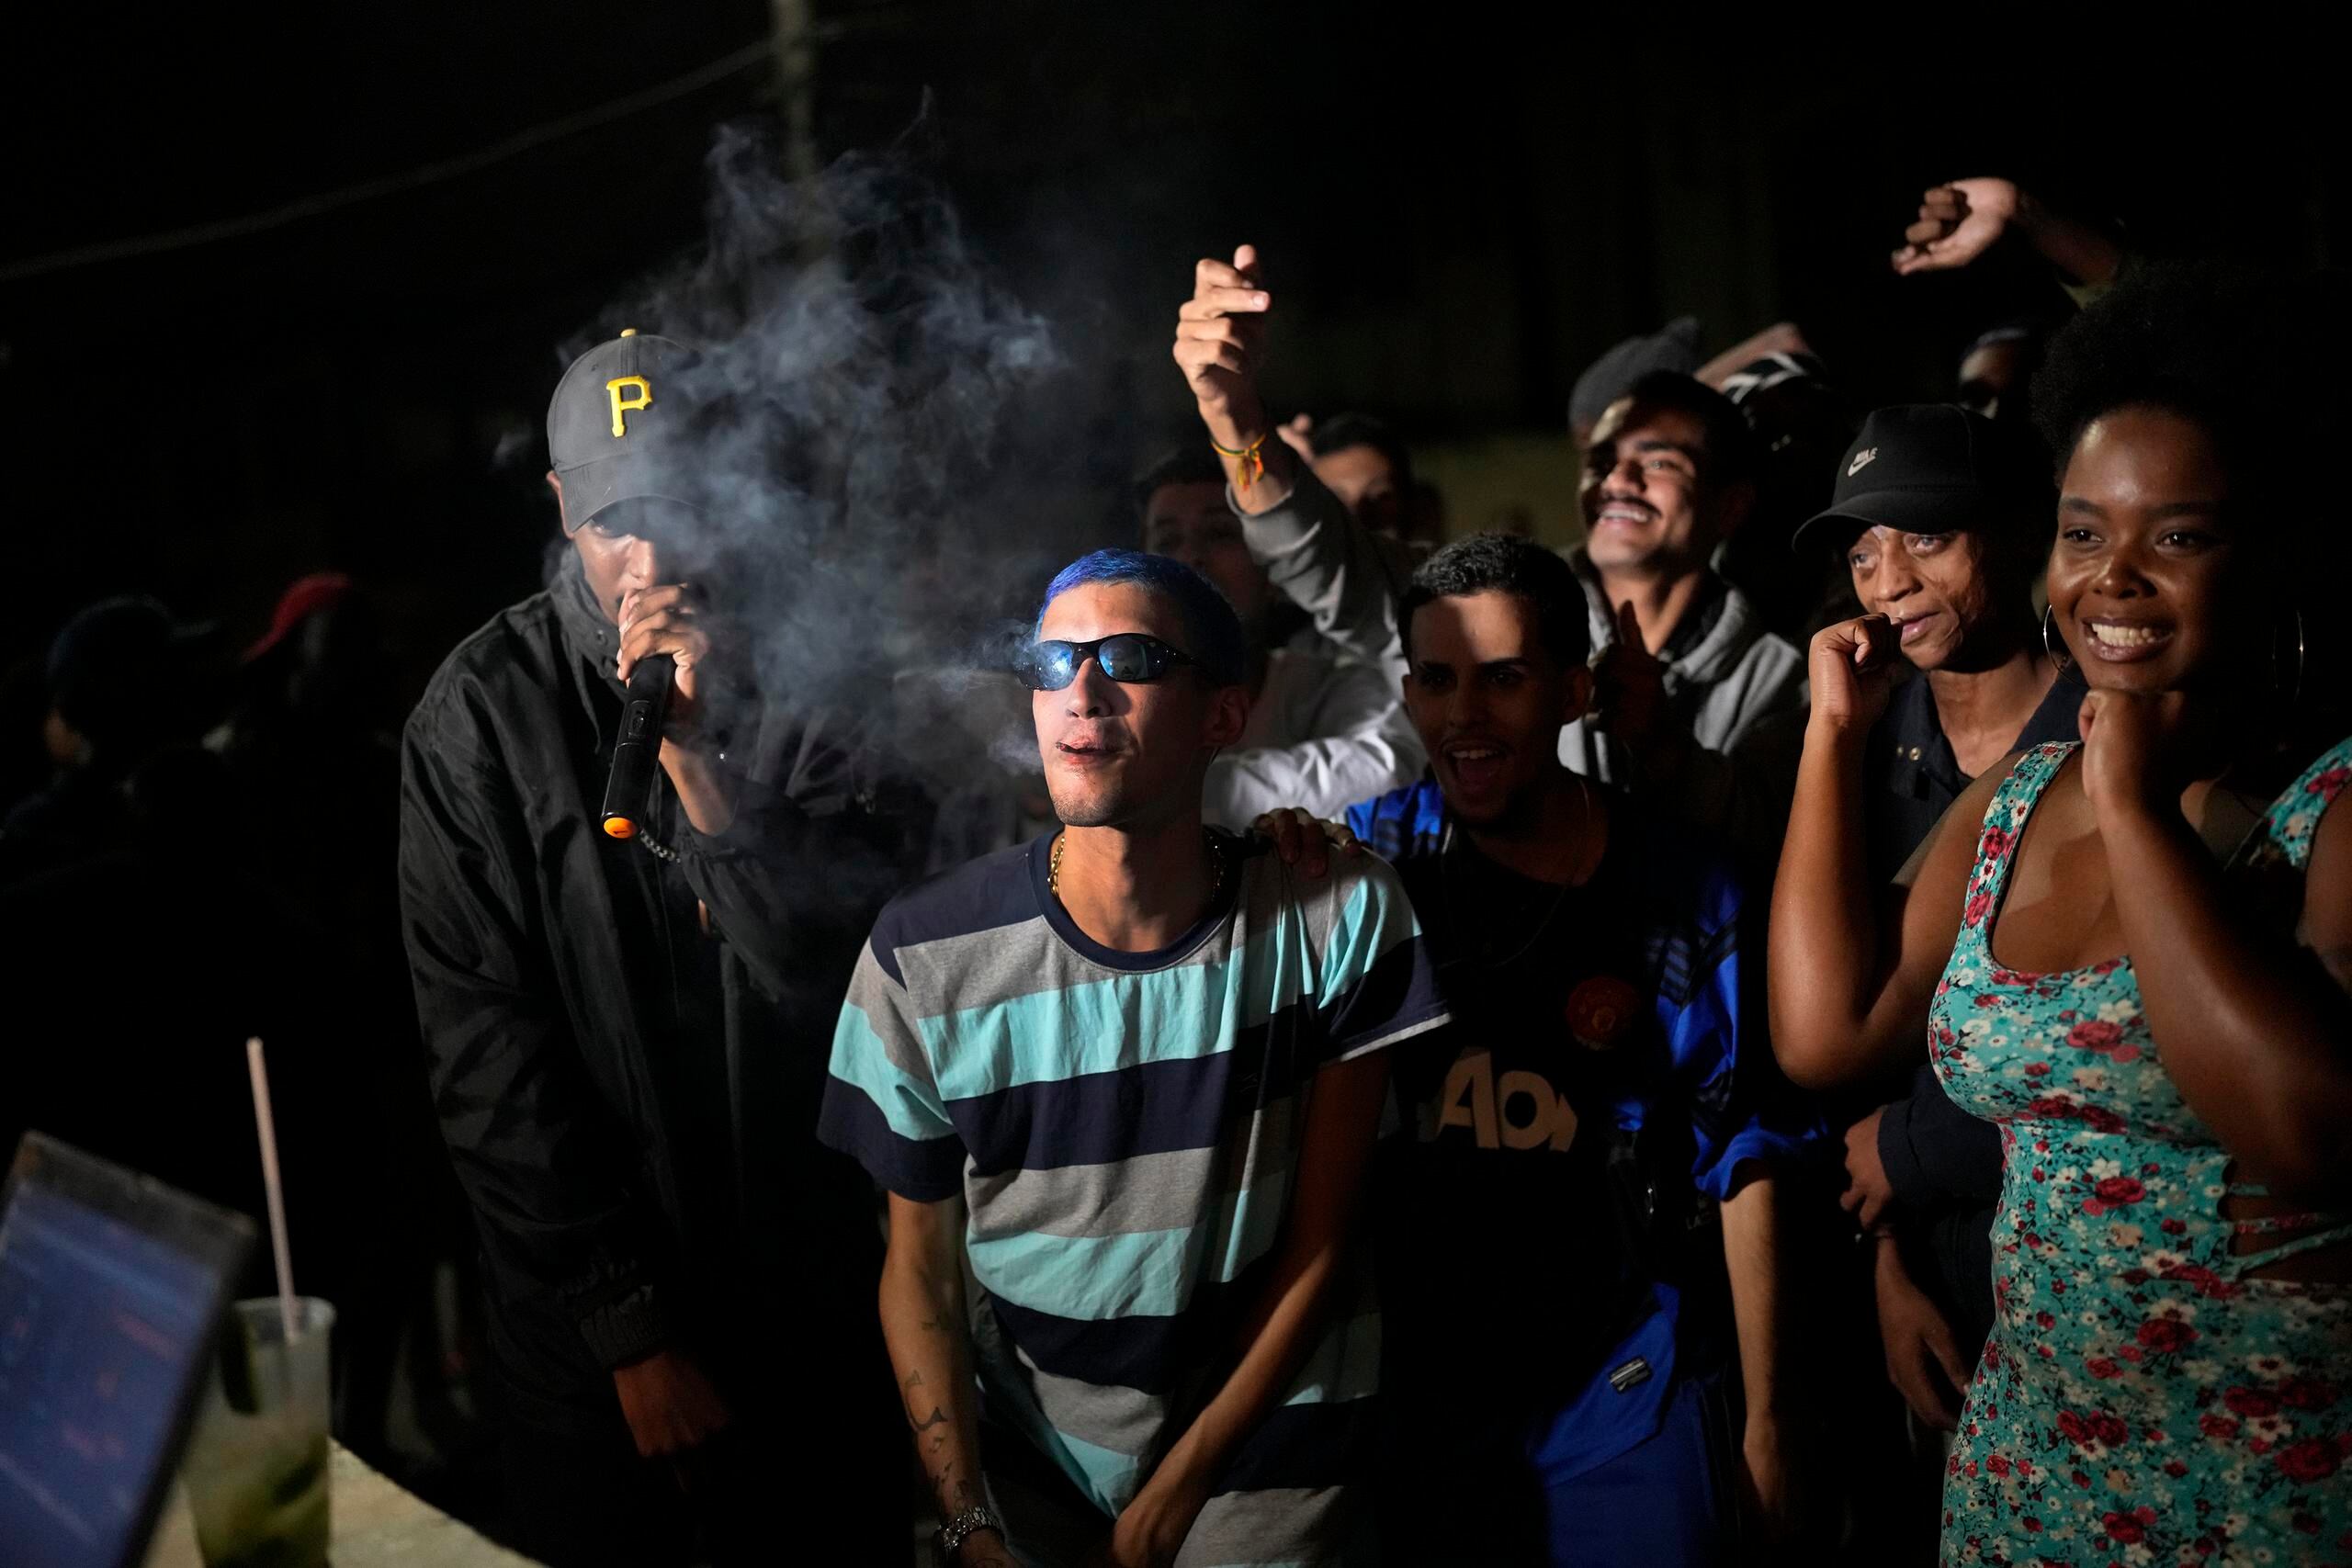 Artistas de rap en la favela como Kunk están comenzando a competir nuevamente desde que la pandemia de COVID-19 redujo las reuniones públicas, lo que representa una señal del regreso a la normalidad para los amantes de la música.